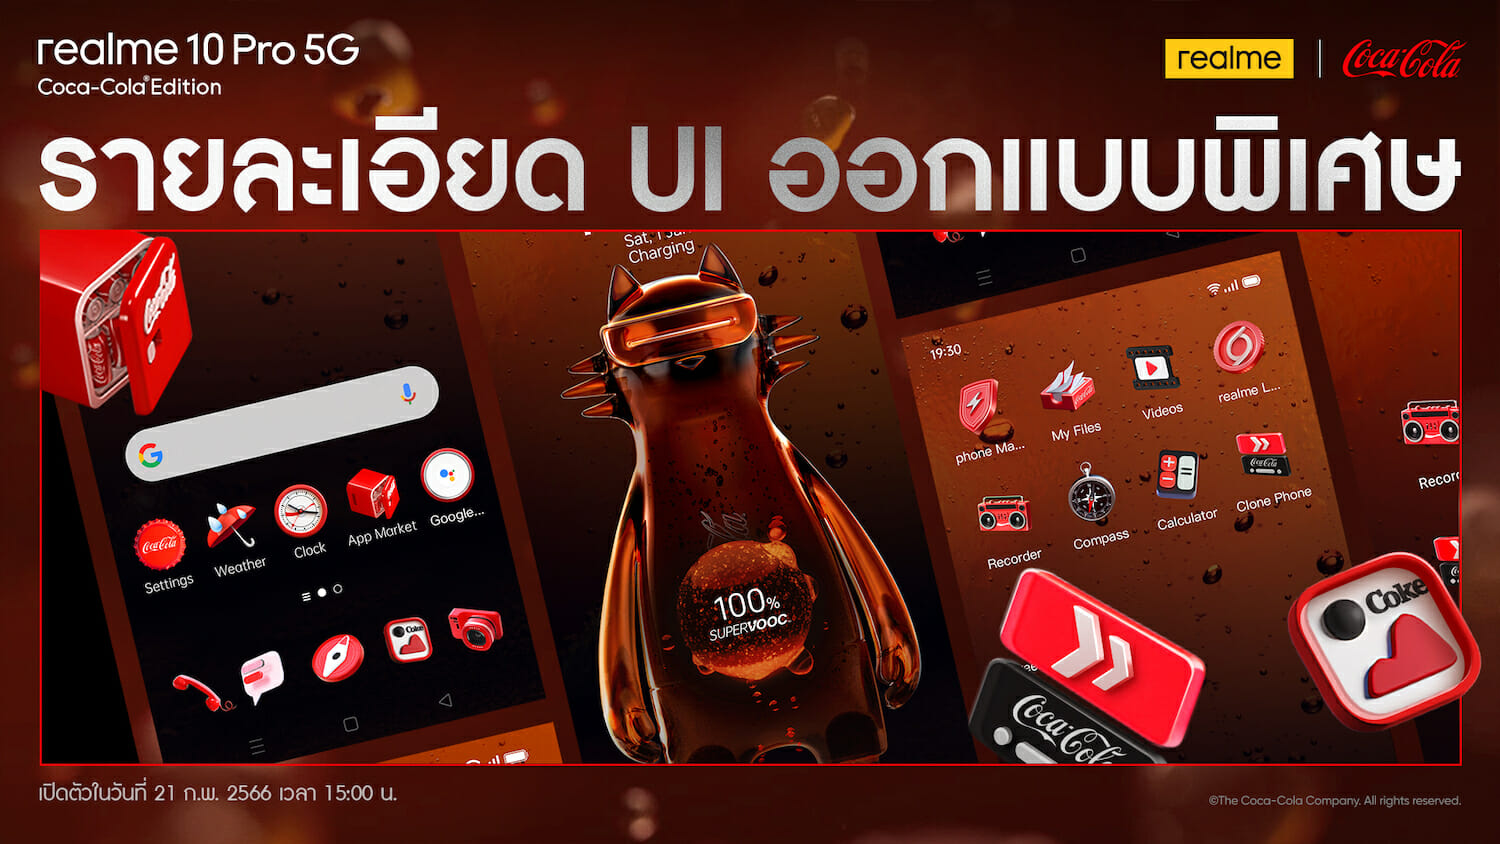 หนึ่งเดียวในโลก! “เรียลมี” จับมือ “โคคา-โคล่า” เปิดตัวสมาร์ตโฟนรุ่นลิมิเต็ด realme 10 Pro 5G Coca-Cola® Edition 5